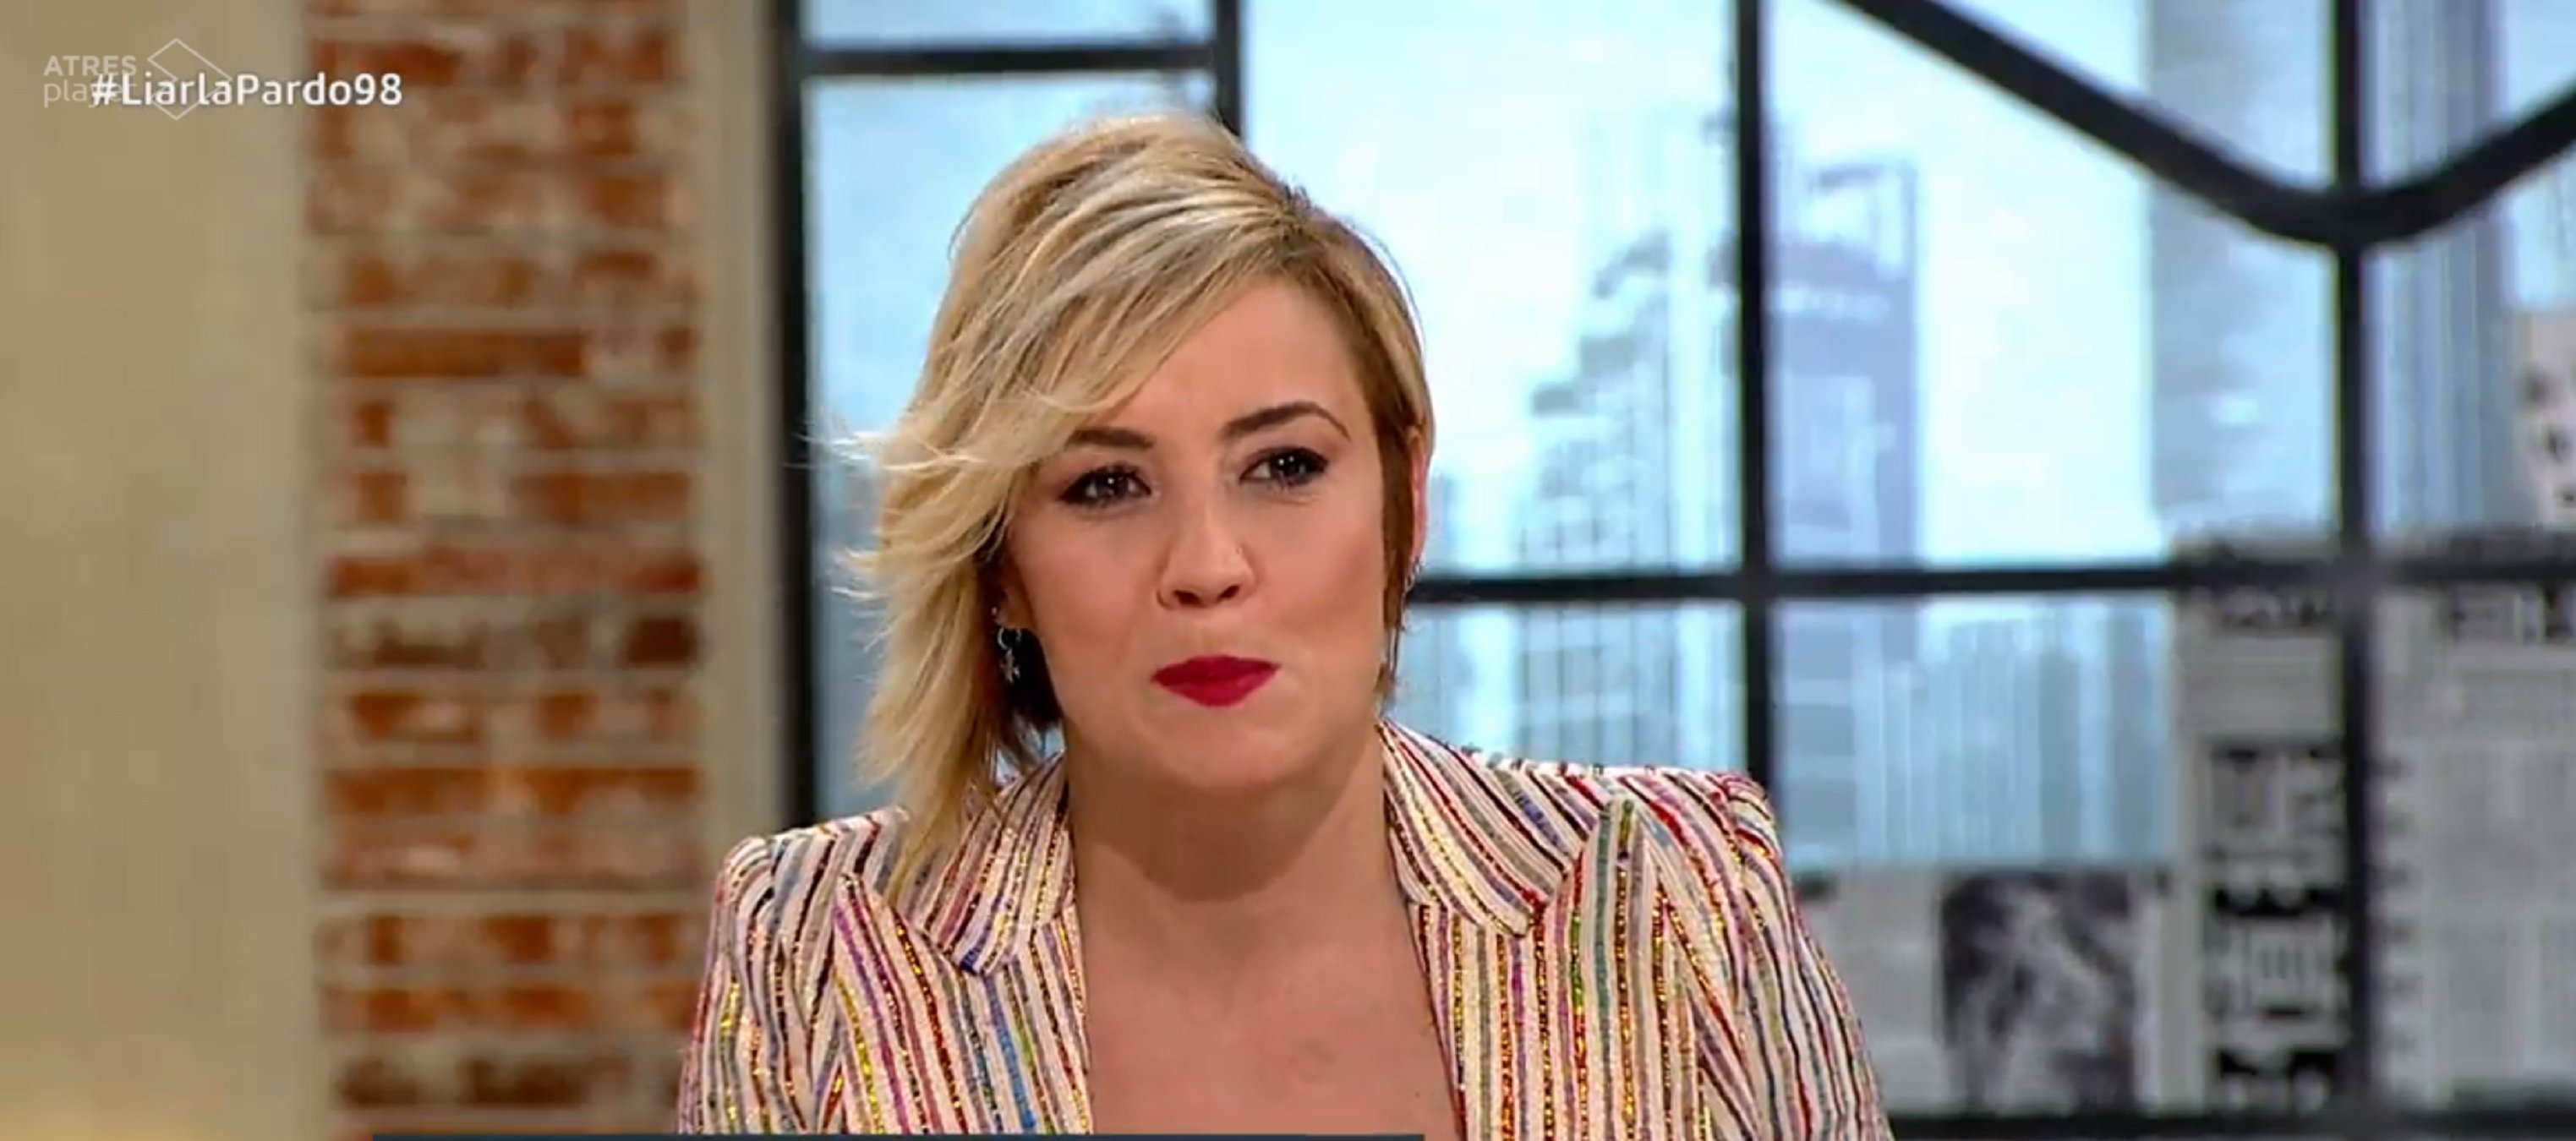 Cristina Pardo lapidada por proteger en TV las mentiras e insultos de PP y Cs